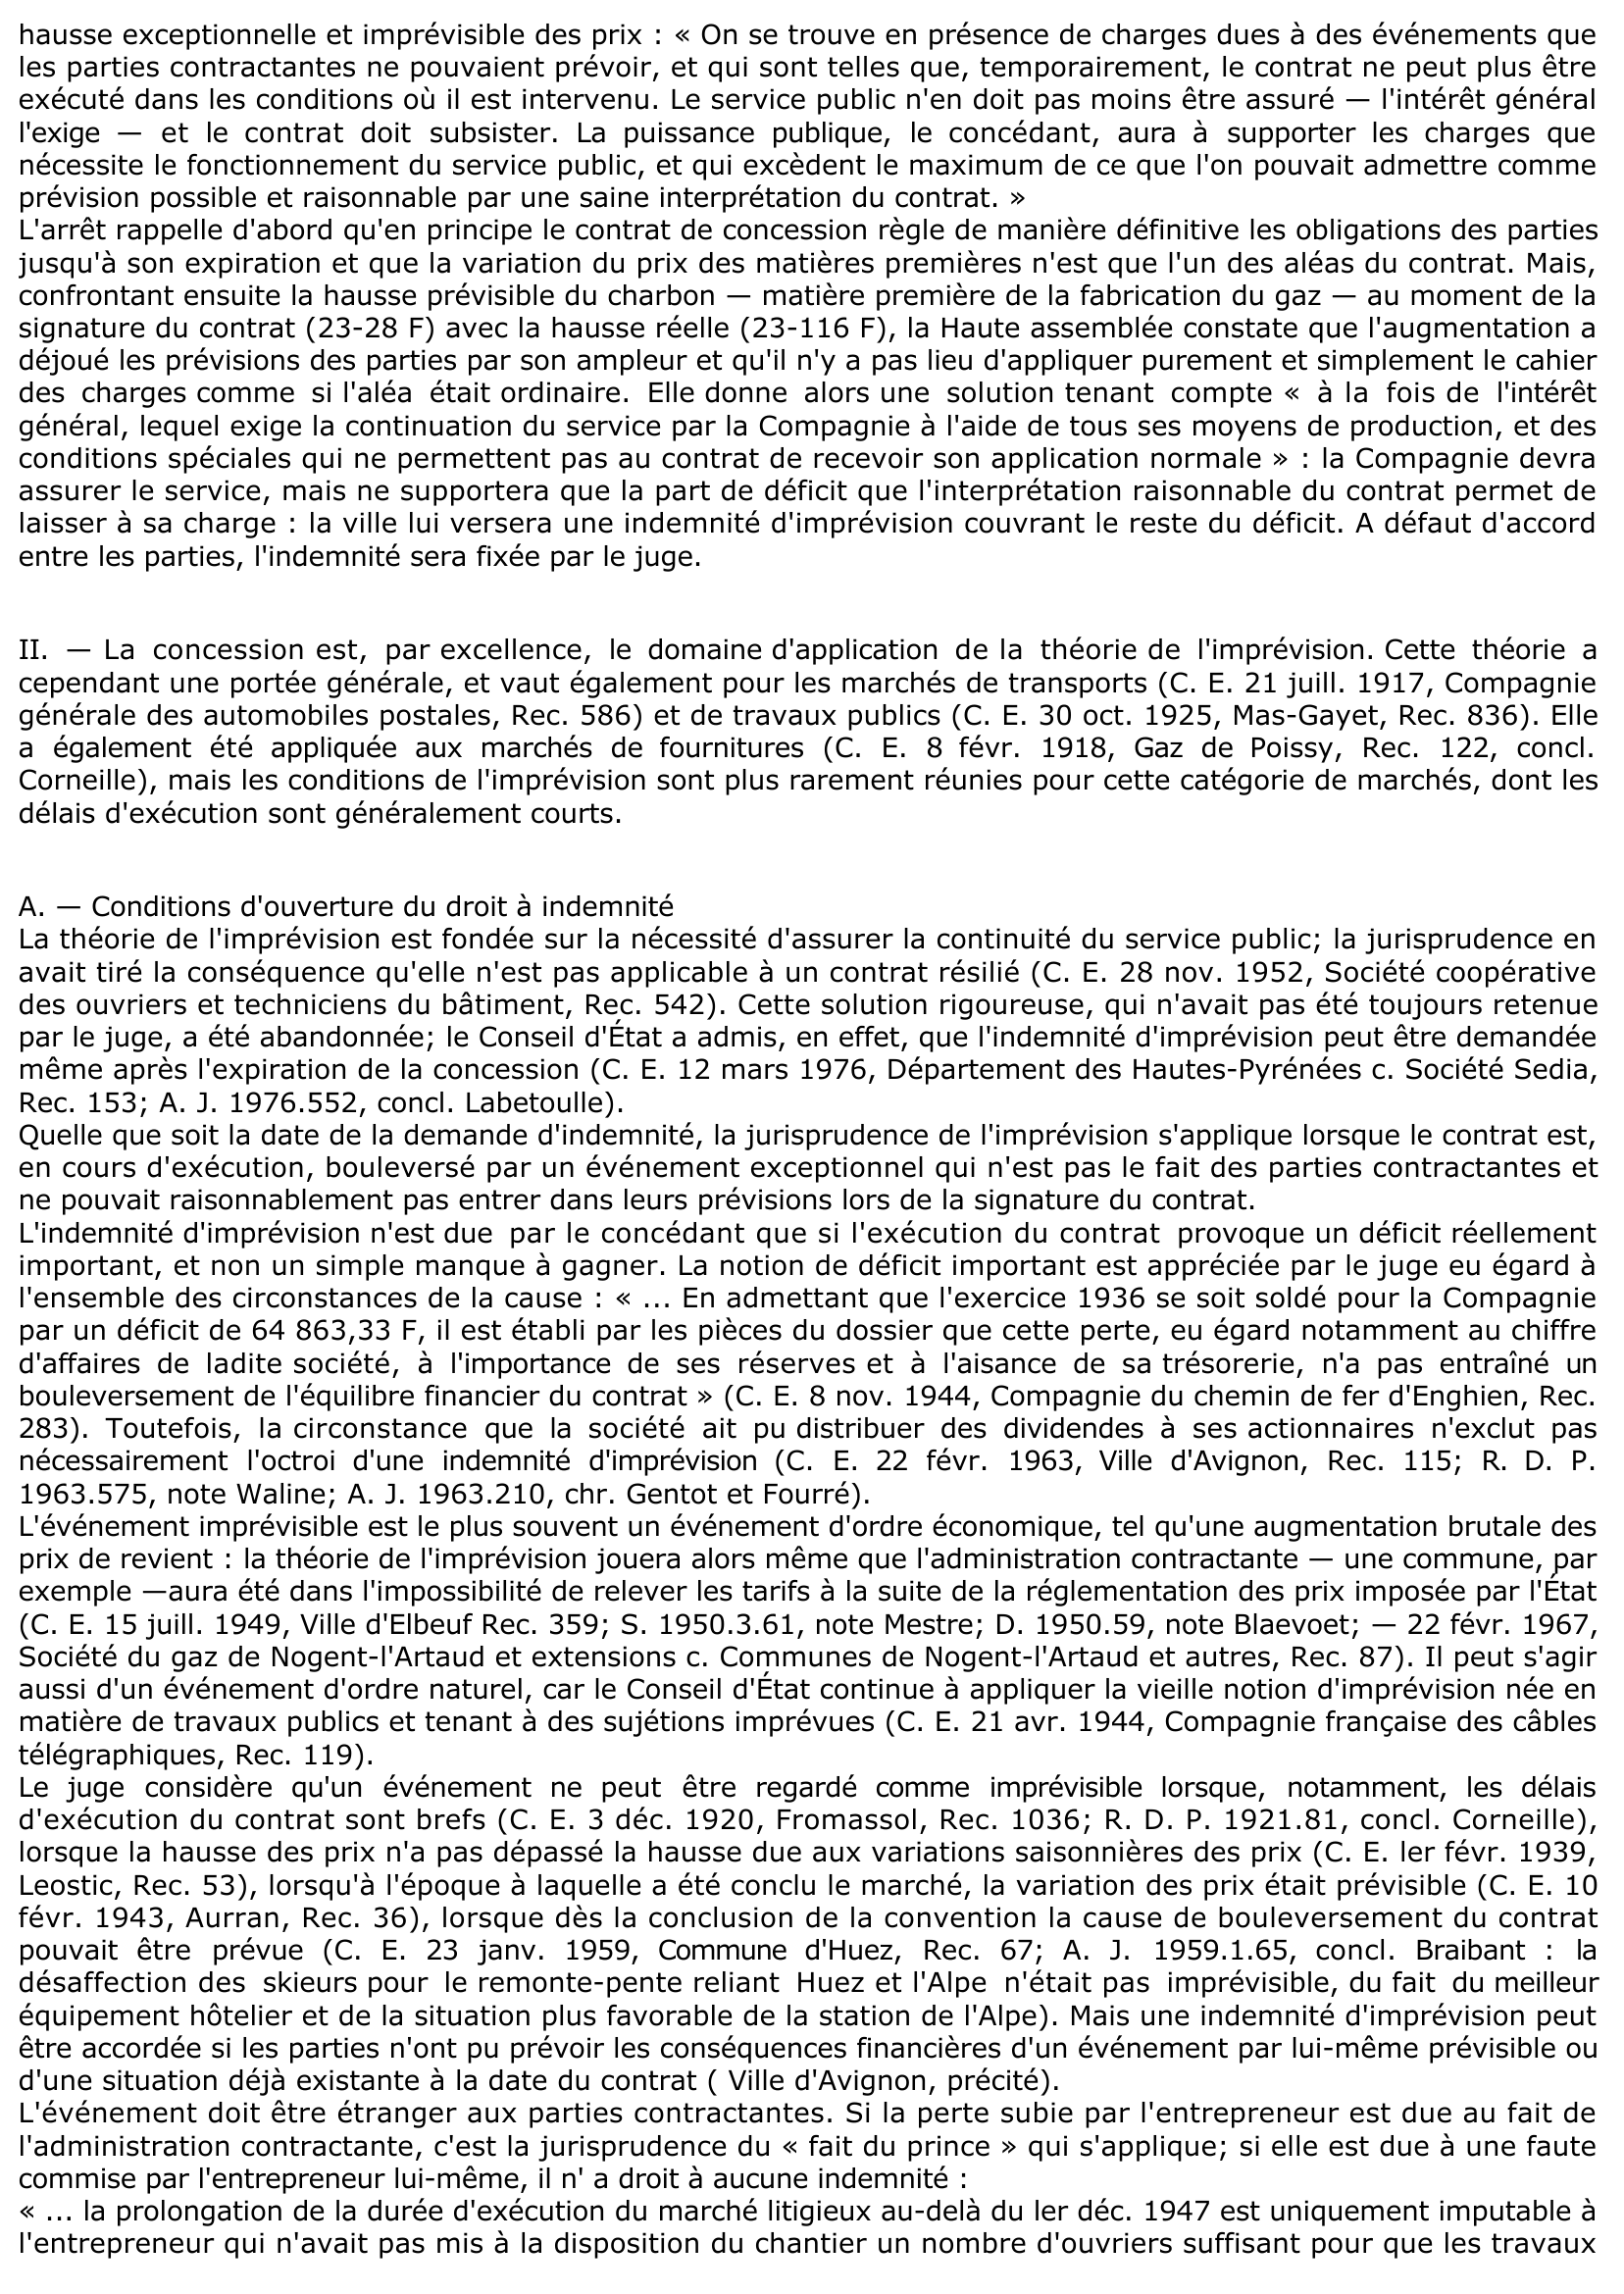 Prévisualisation du document CONTRATS ADMINISTRATIFS IMPRÉVISION - C. E. 30 mars 1916, COMPAGNIE GÉNÉRALE D'ÉCLAIRAGE DE BORDEAUX, Rec. 125, concl. Chardenet (commentaire d'arrêt)